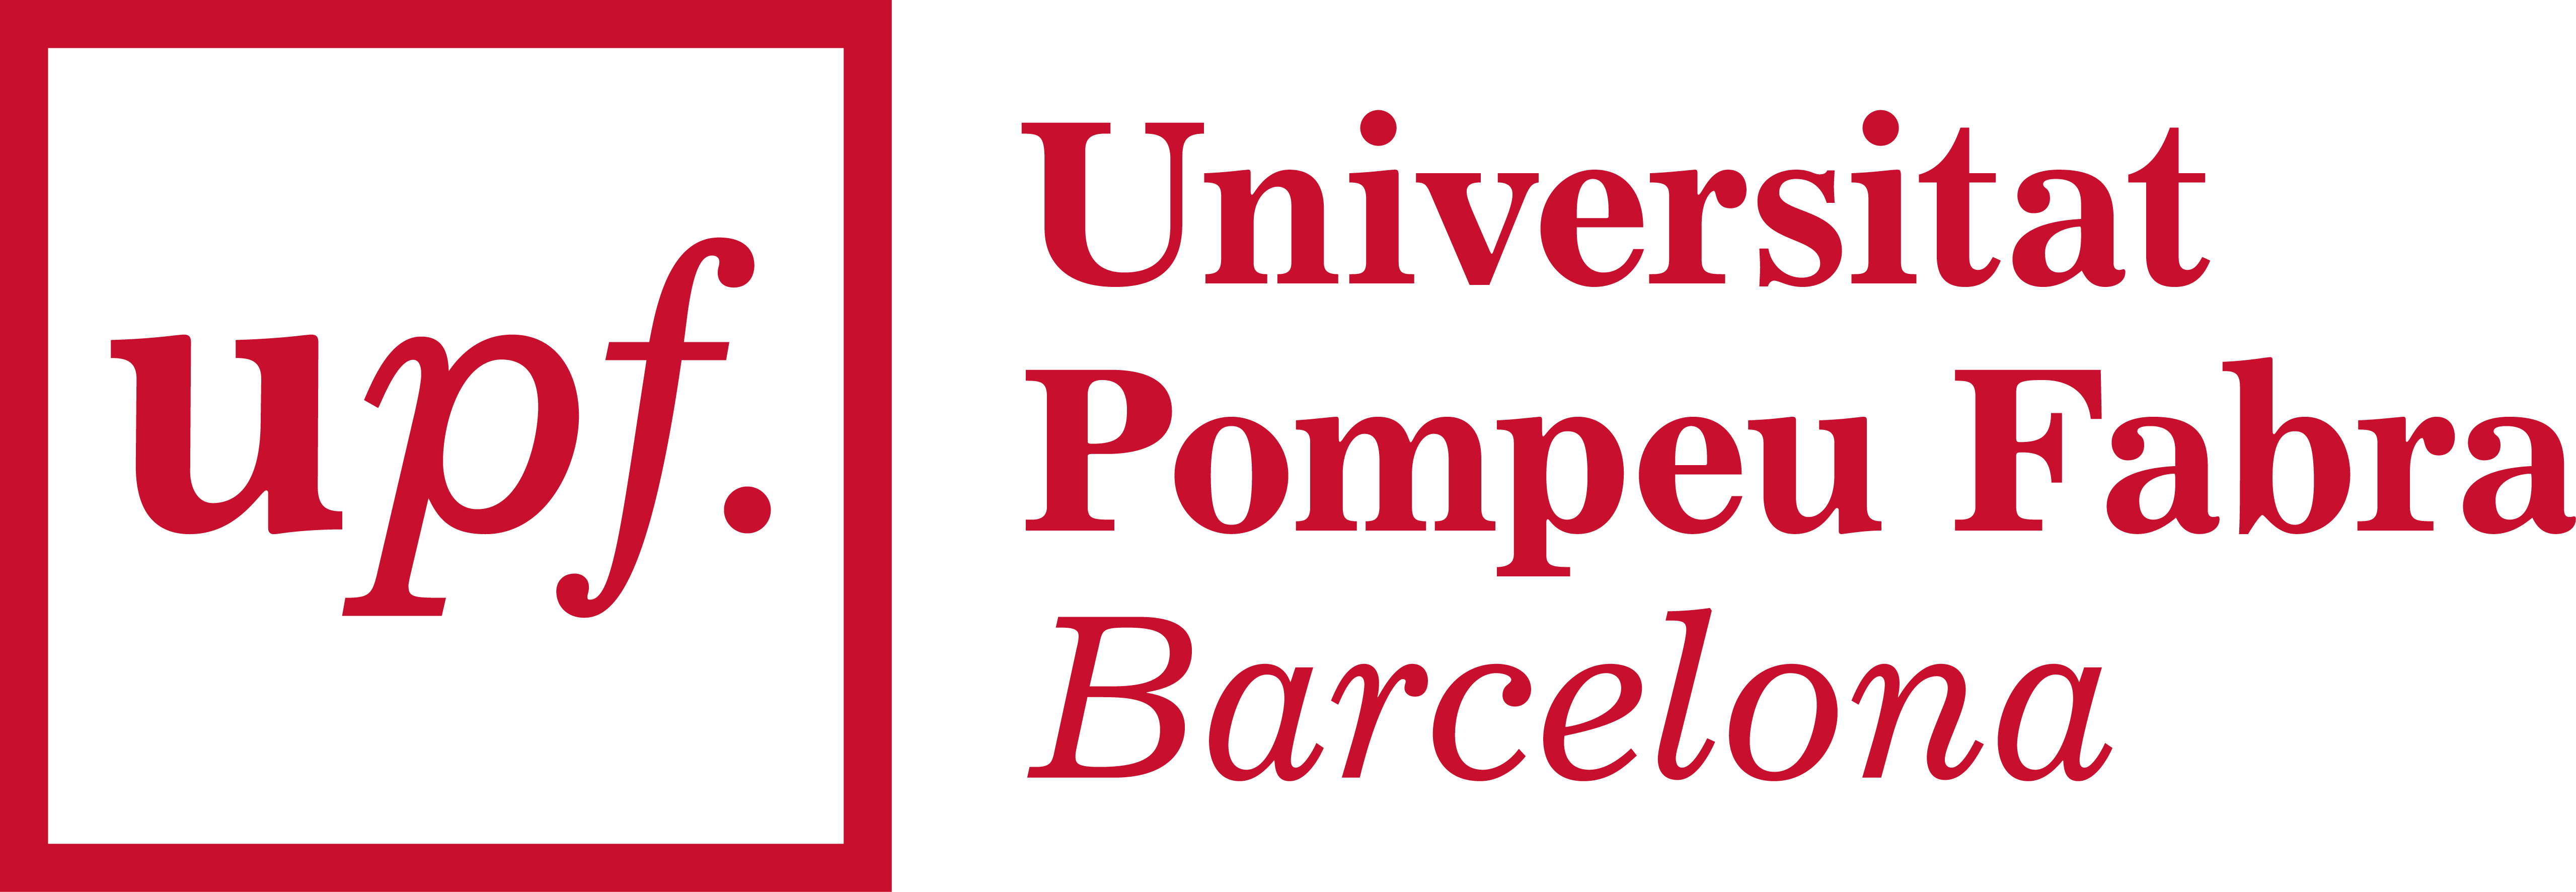 Máster Universitario en UX: Usabilidad, Diseño de Interacción y Experiencia de Usuario - UPF Barcelona School of Management